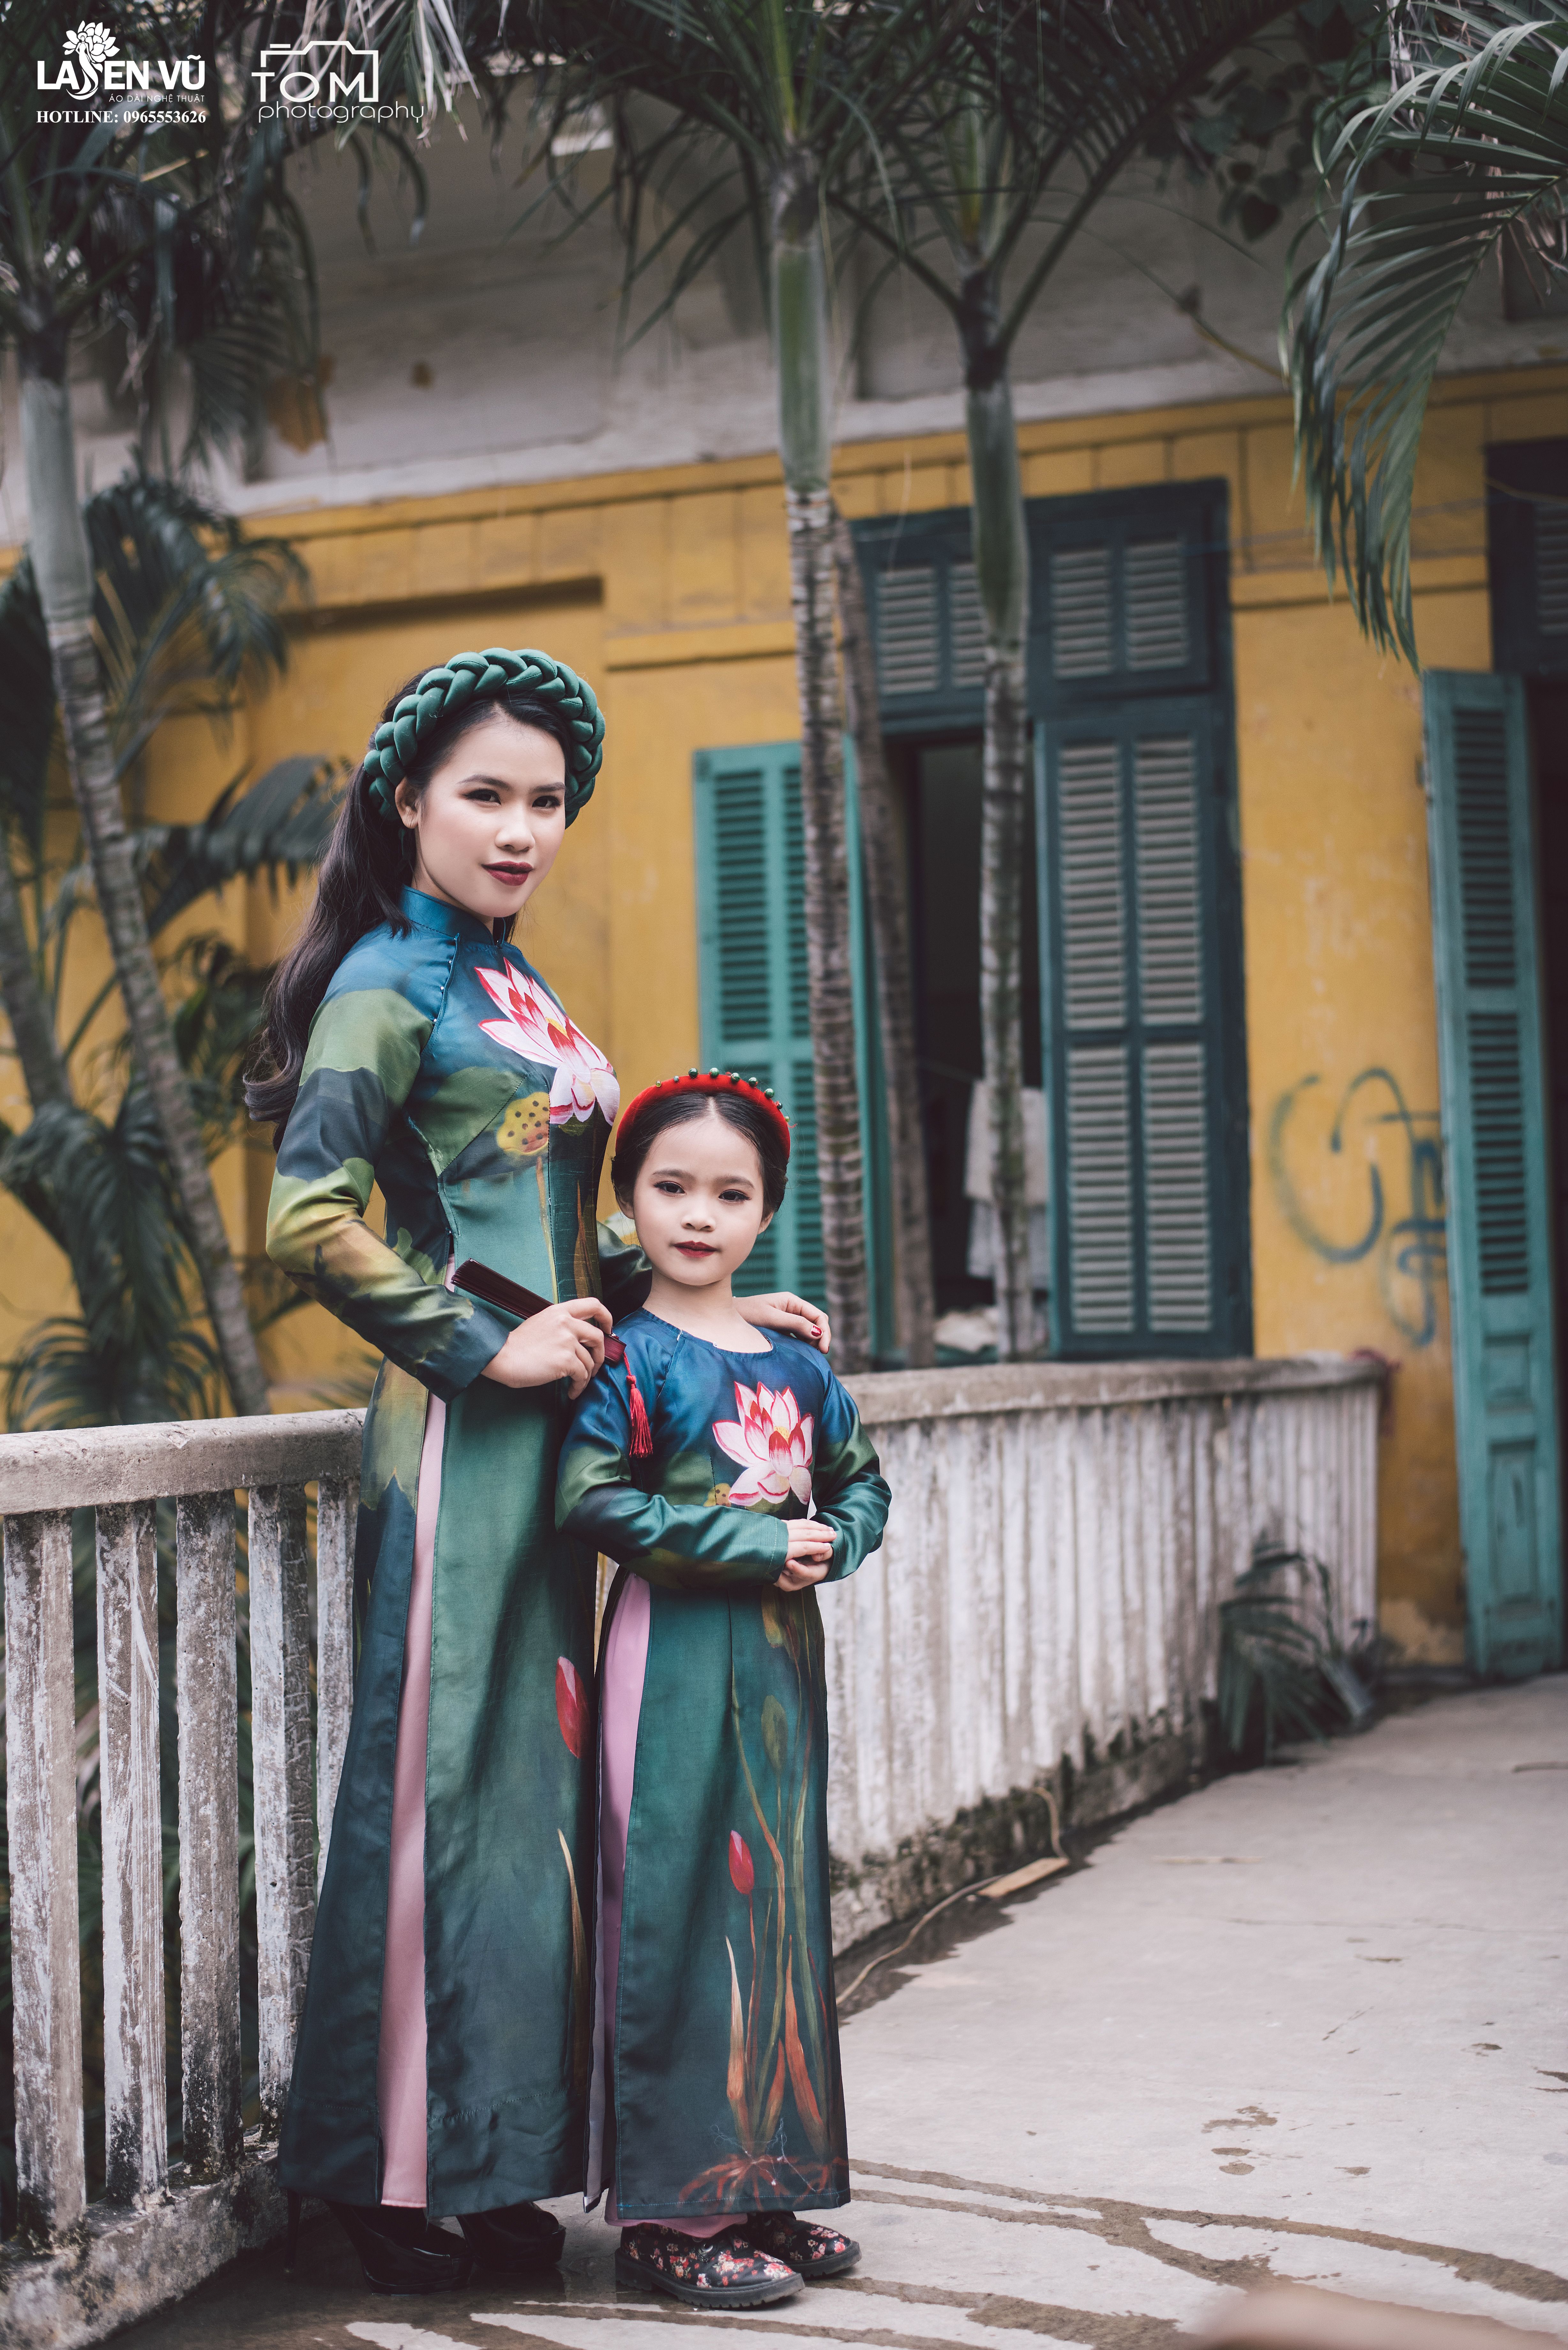 Sự kết hợp hài hoà giữa truyền thống và hiện đại trong thời trang tôn lên vẻ đẹp thuần khiết Á Đông.